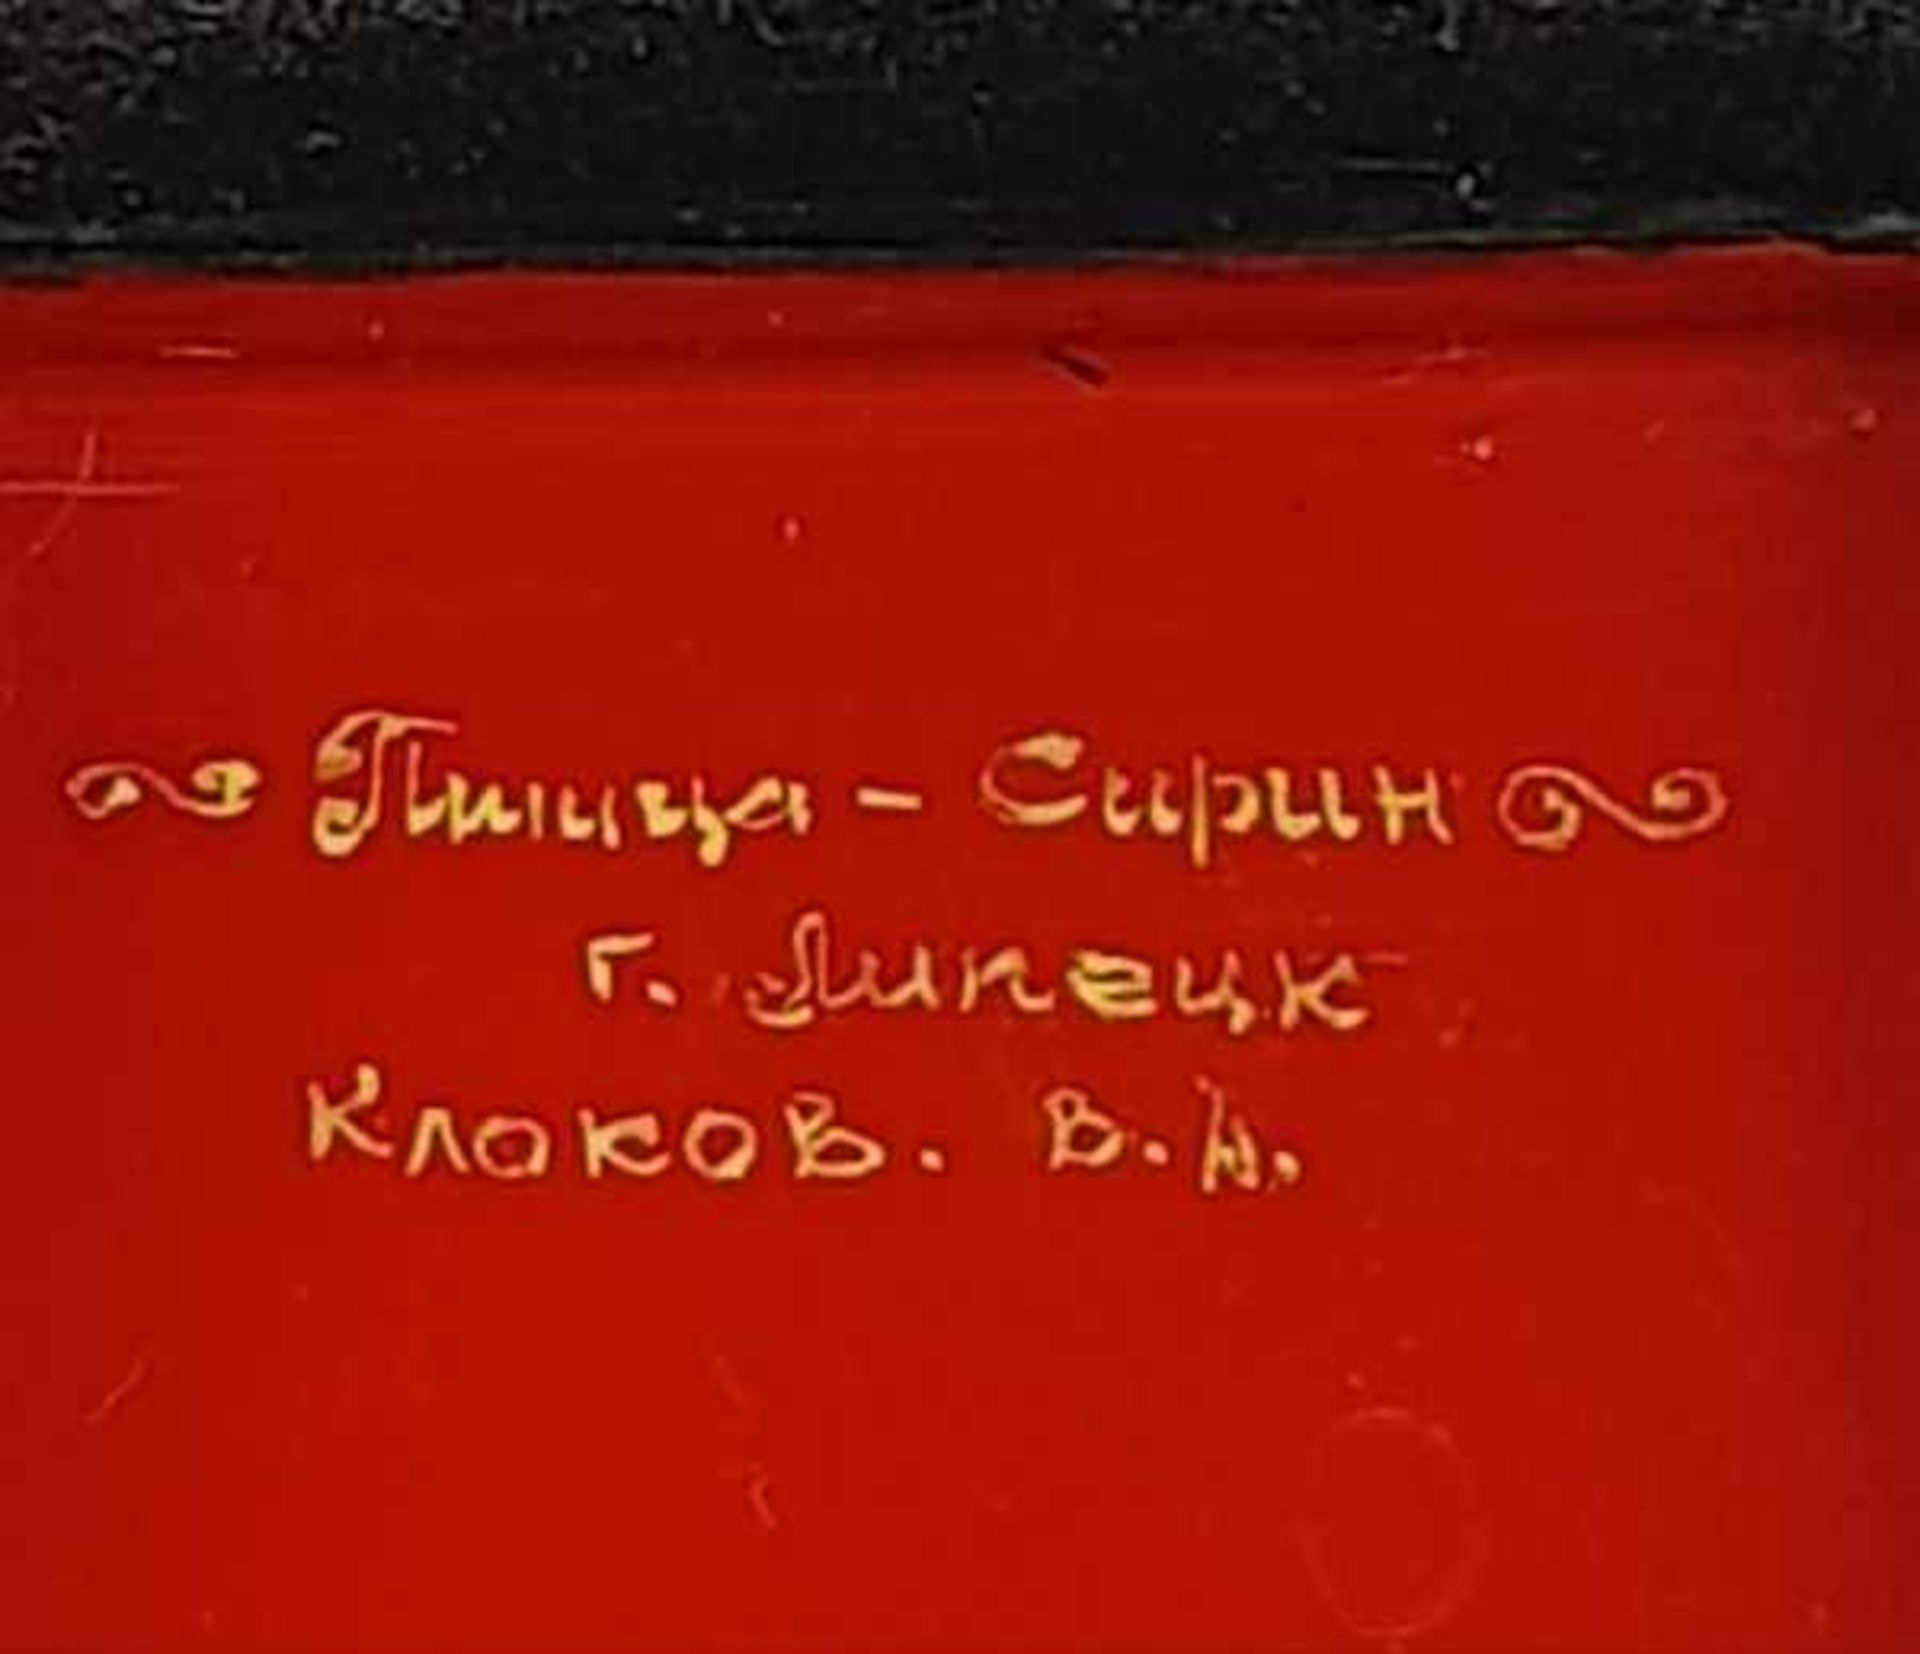 (Curiosa) Russische lakdoosjesRussische lakdoosjes, eind 20e eeuw Conditie: In goede staat. - Image 9 of 10